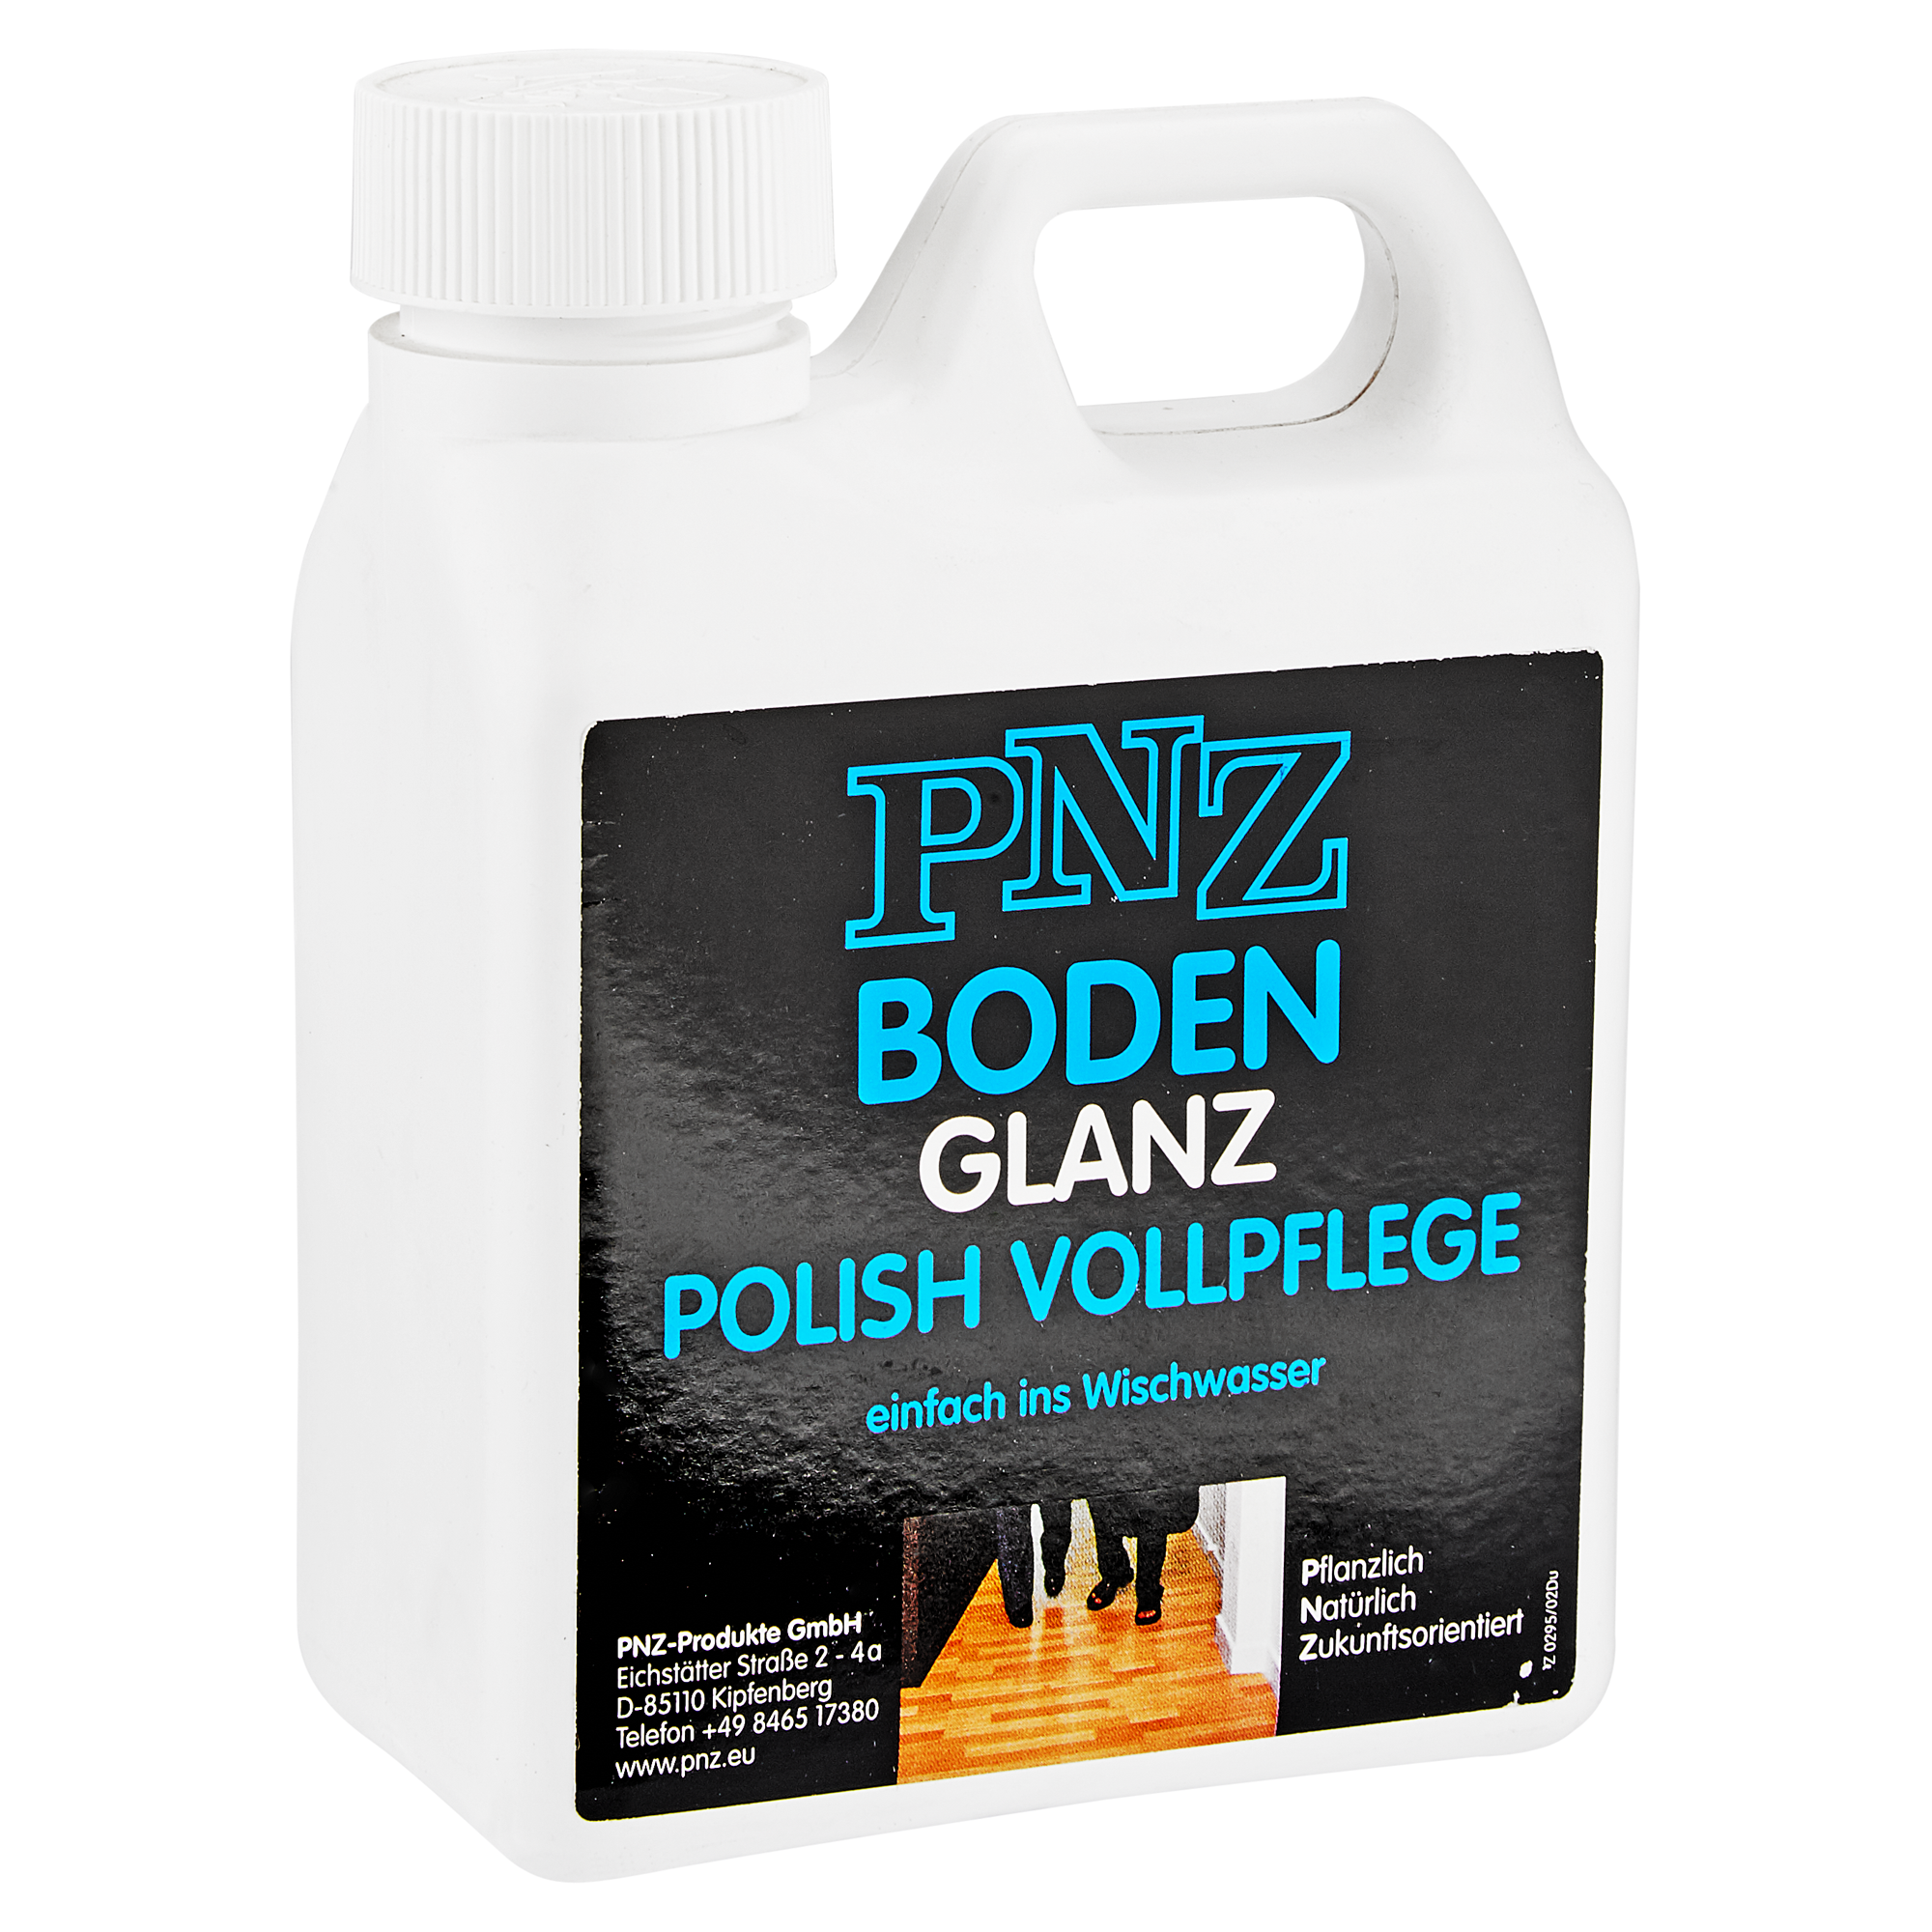 Bodenvollpflege "Glanz Polish" 1 l + product picture